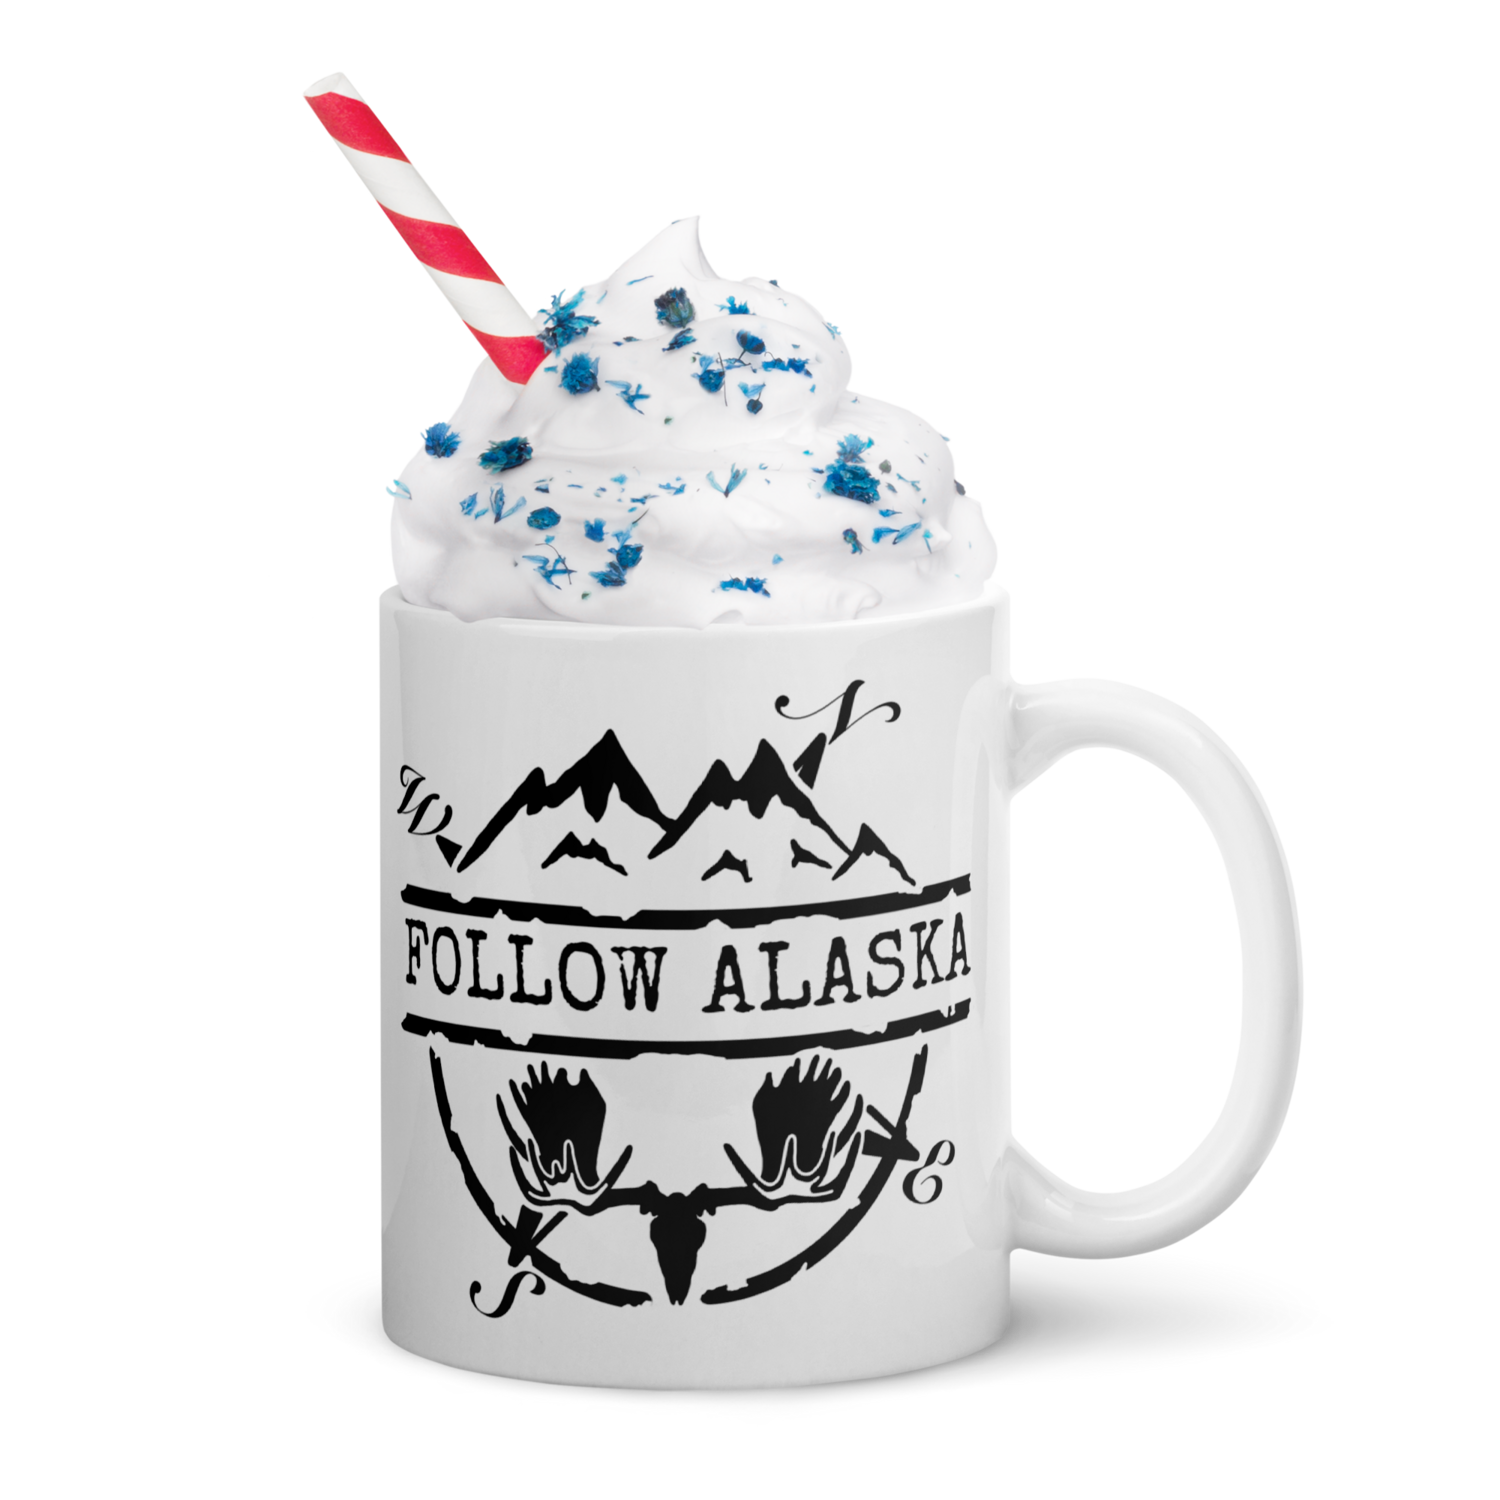 Follow Alaska Mug